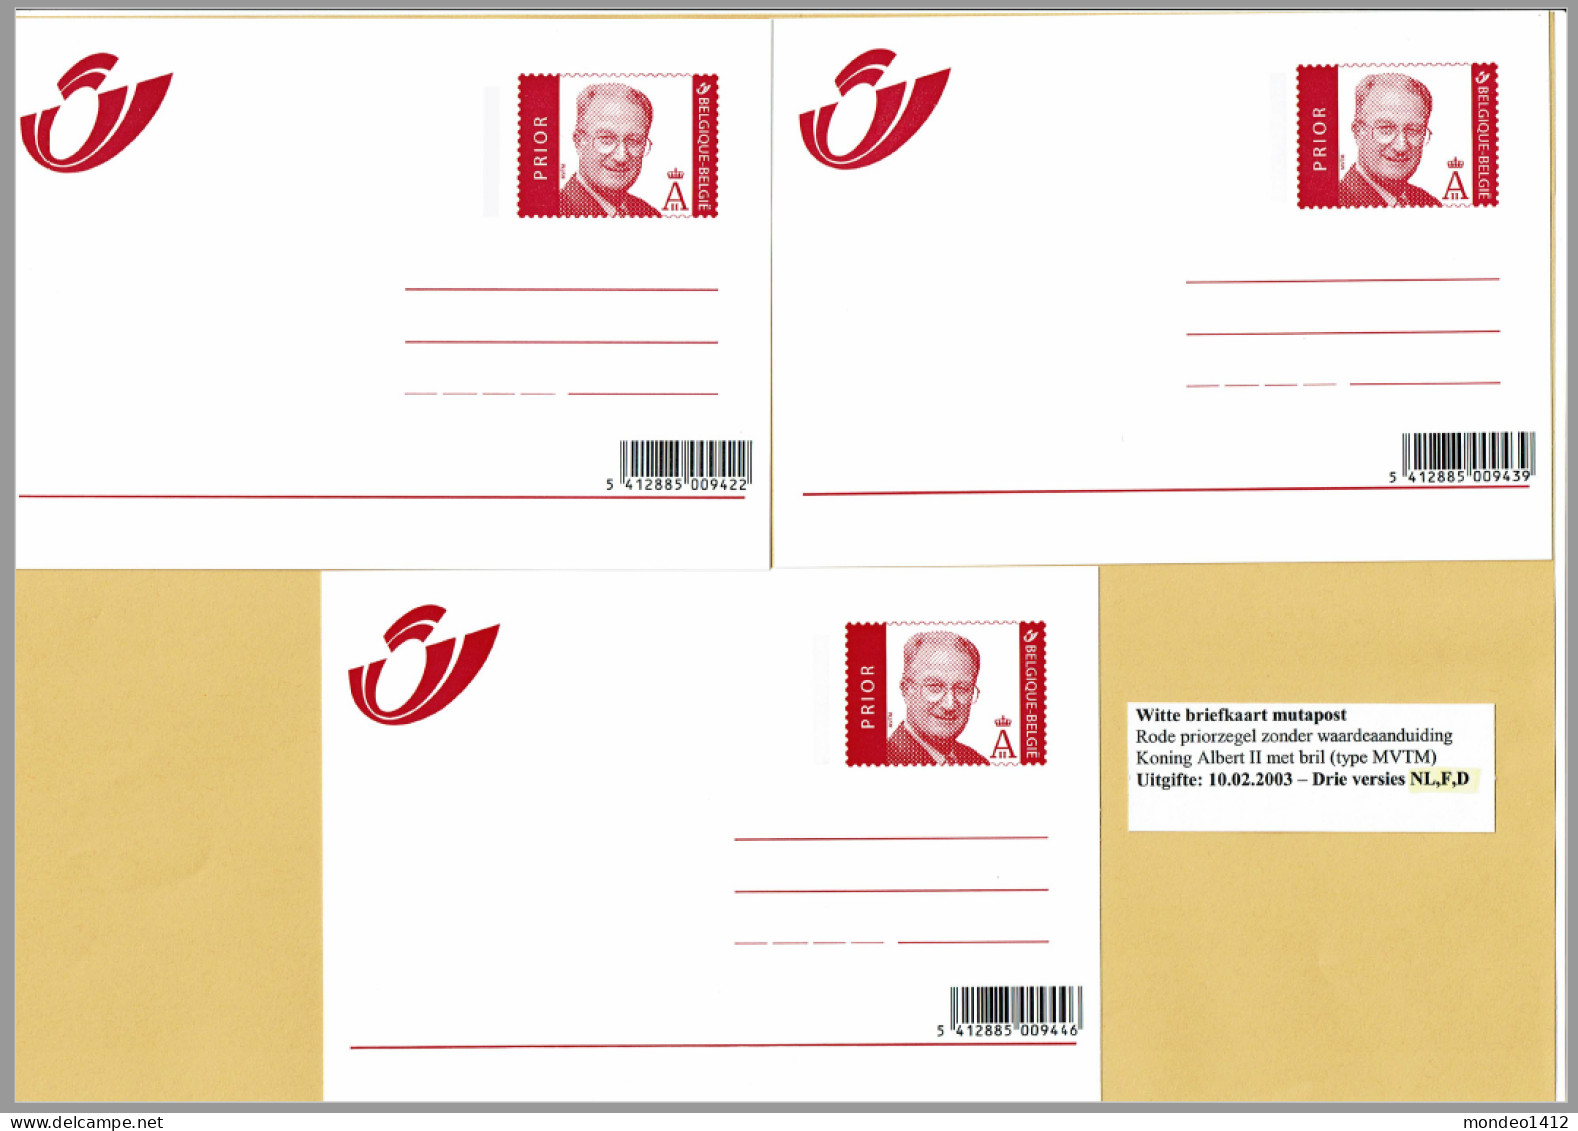 2003 - Briefkaarten - Adresverandering, Avis De Changement D'adresse Prior Zegel - Compleet N-F-D - Addr. Chang.